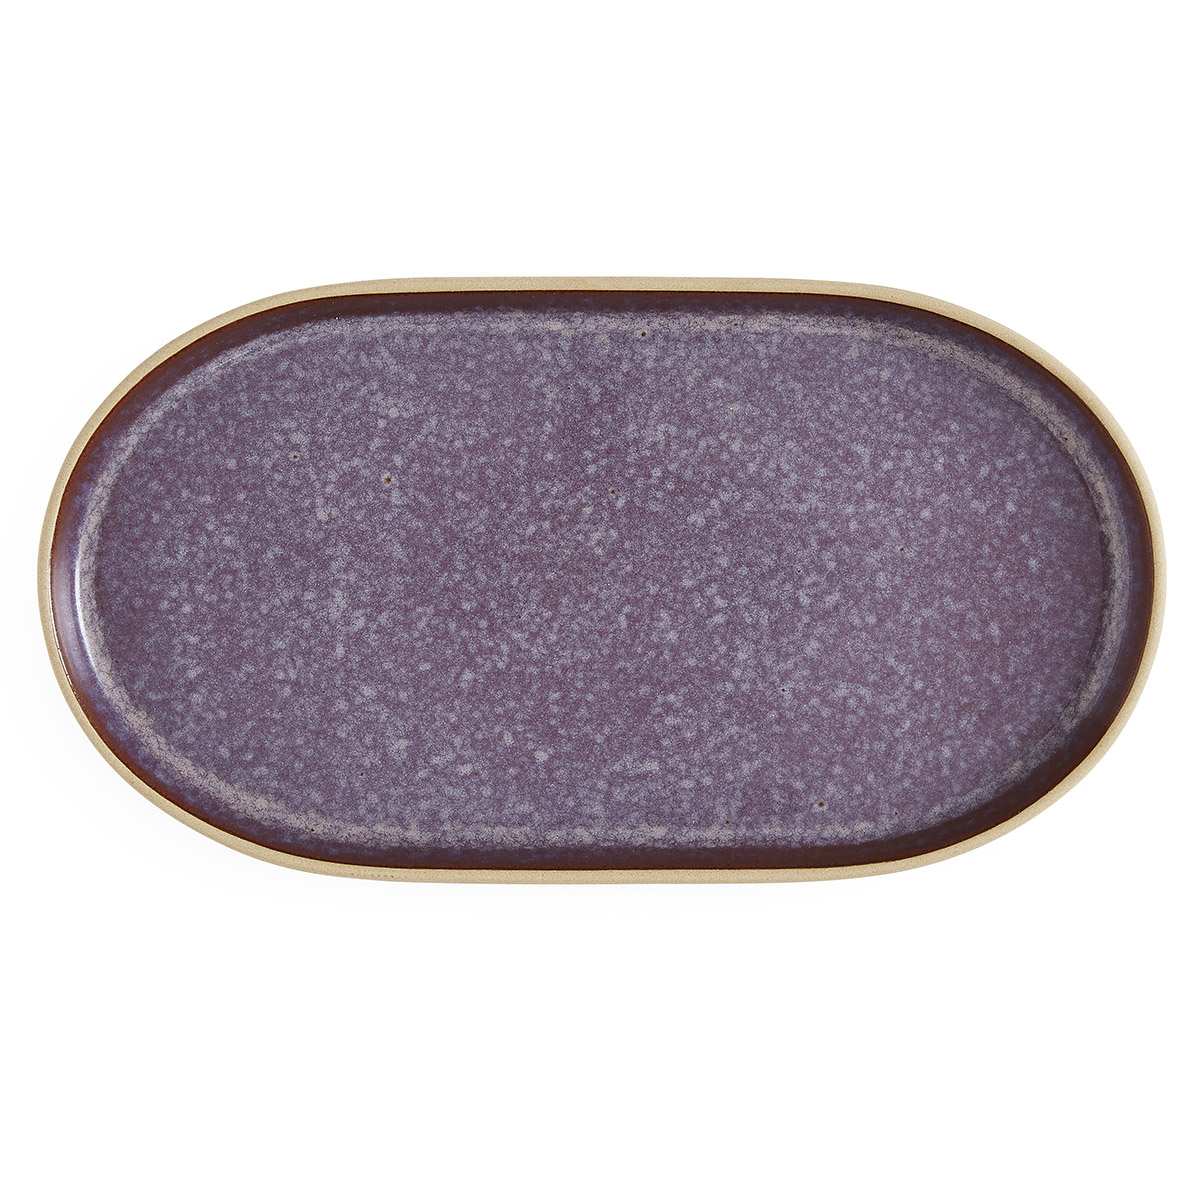 Minerals Medium Oval Platter, Amethyst image number null